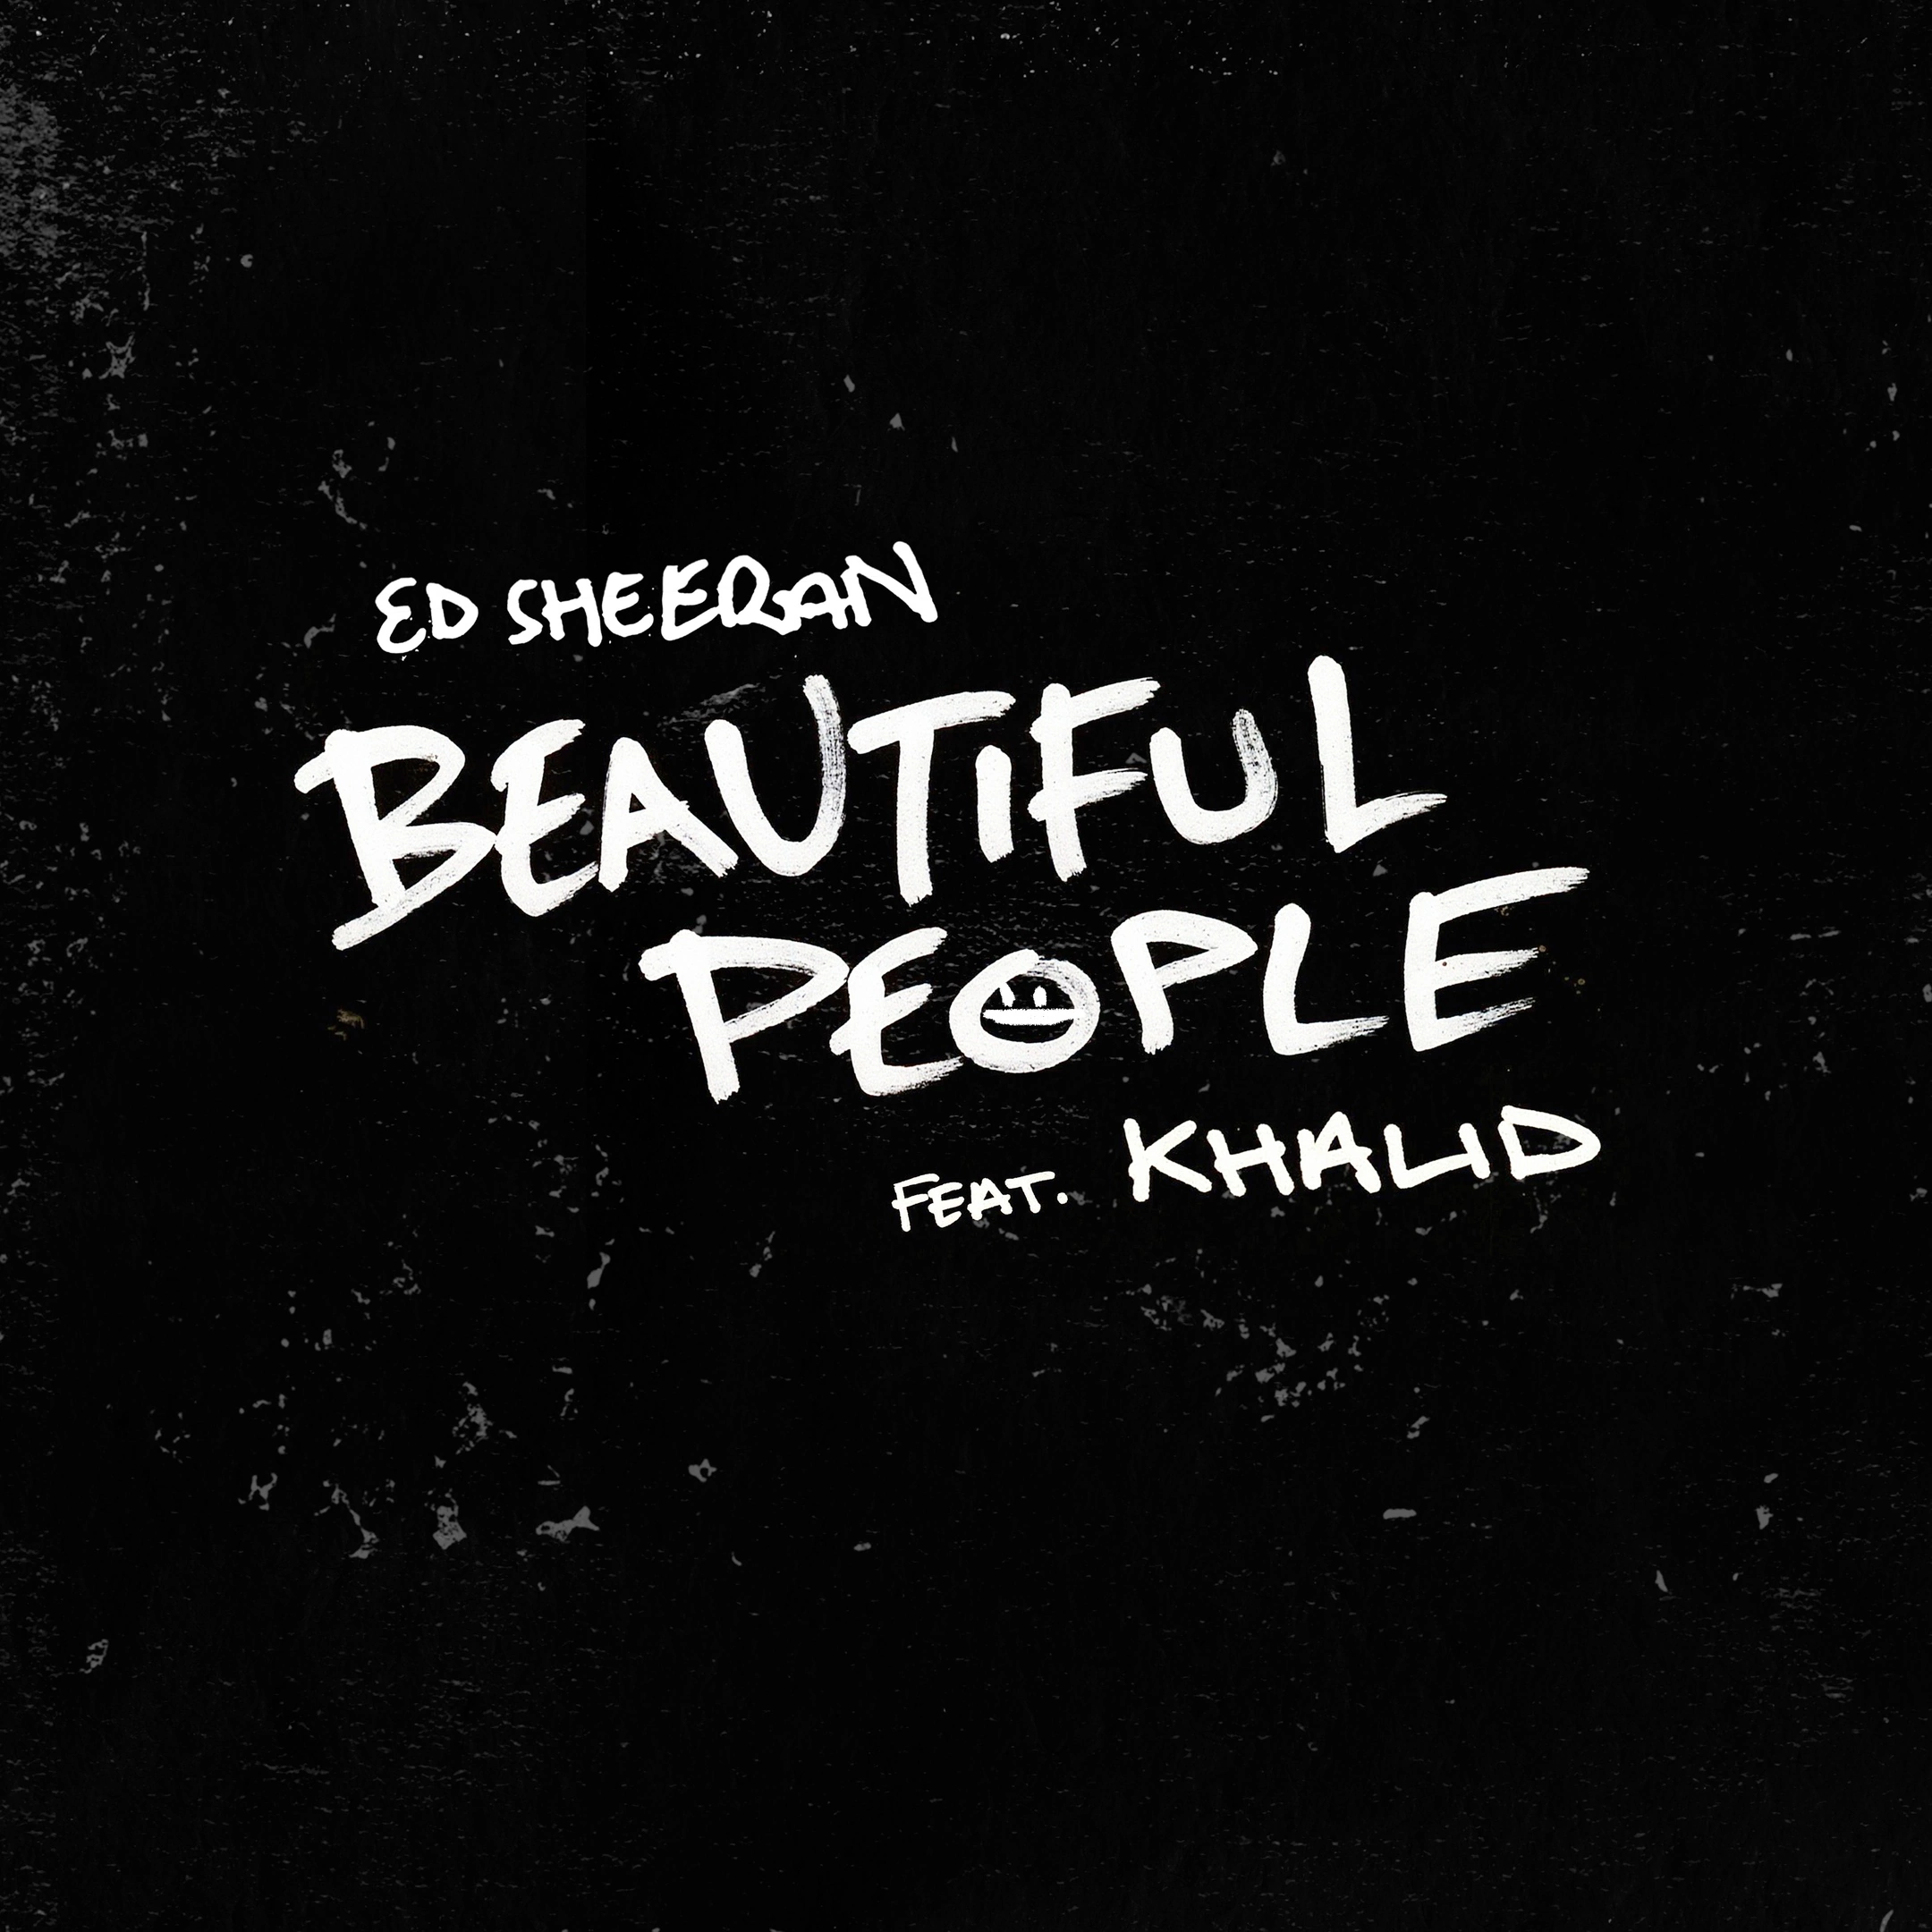 Ed Sheeran featuring Khalid — Beautiful People cover artwork